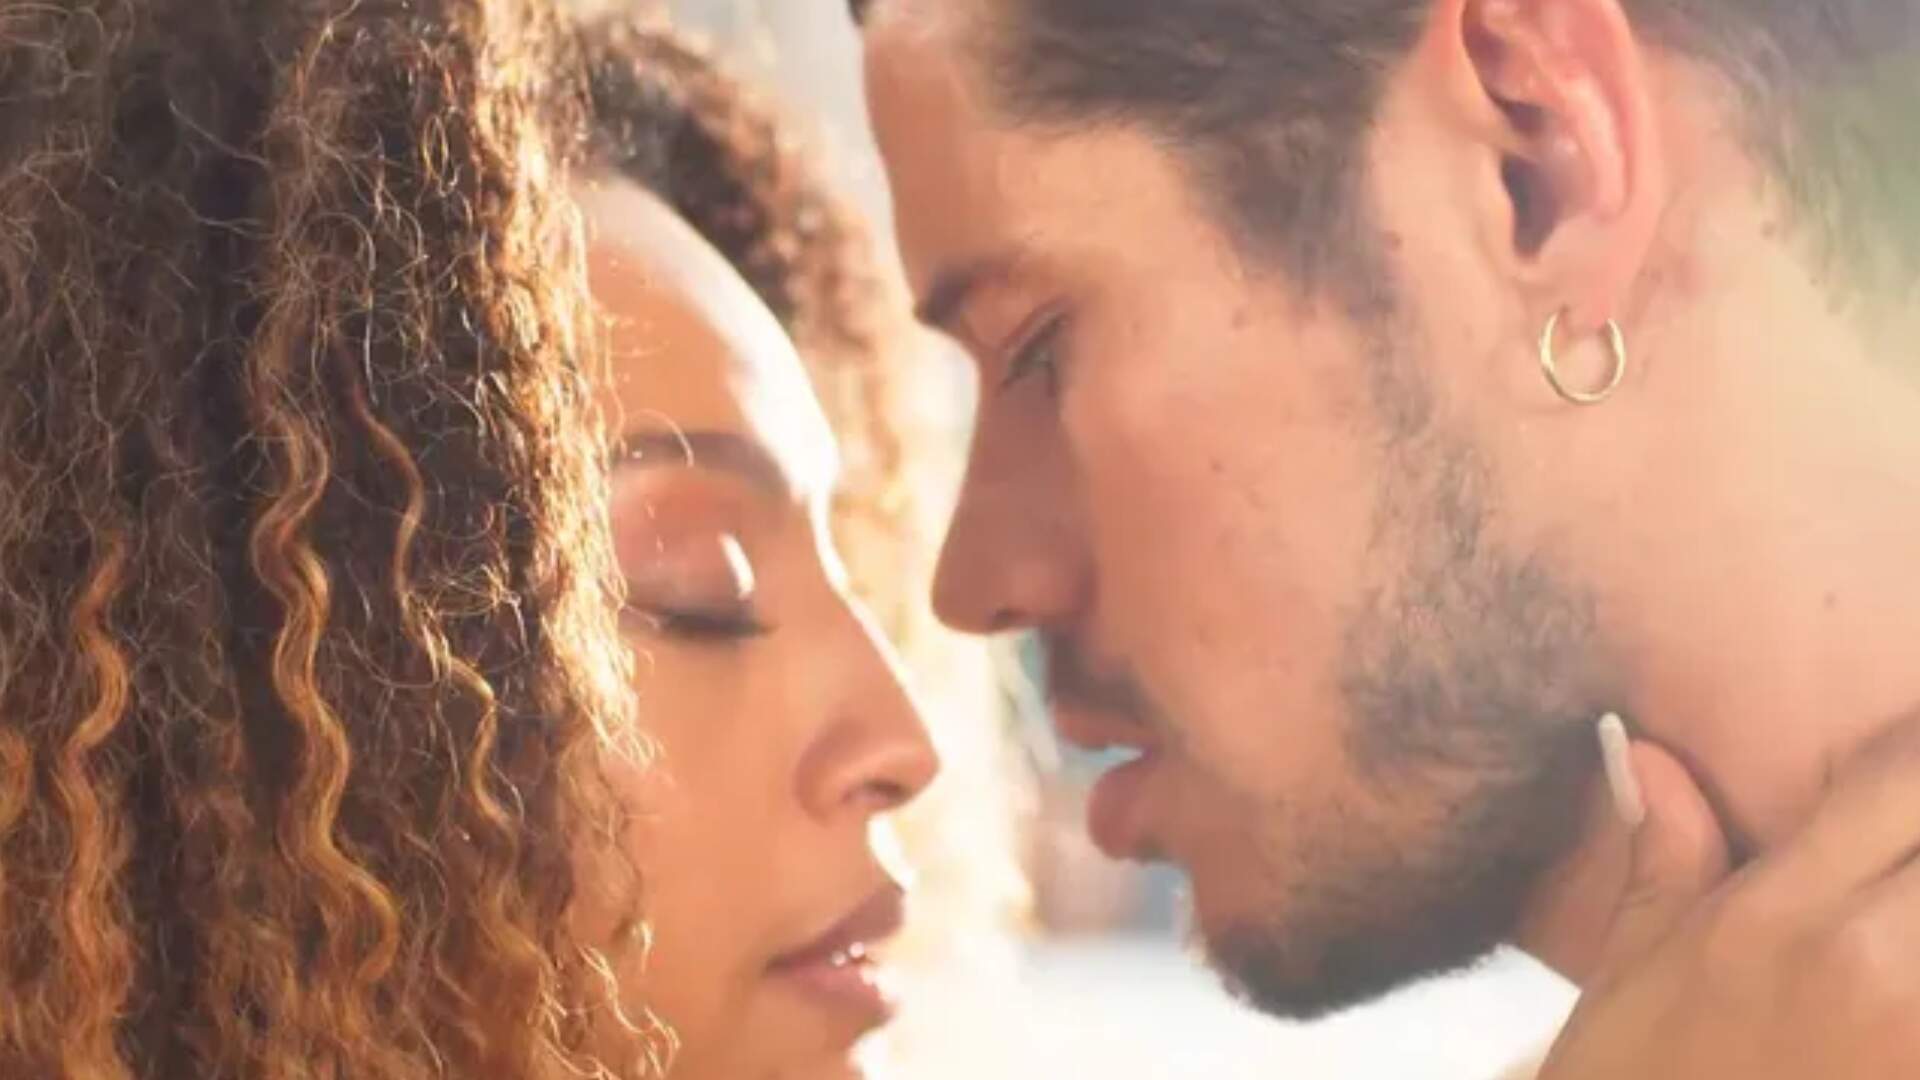 Vai na Fé: Lui e Sol dão o primeiro beijo e cantor comemora, ‘Sol me beijou!’ - Metropolitana FM